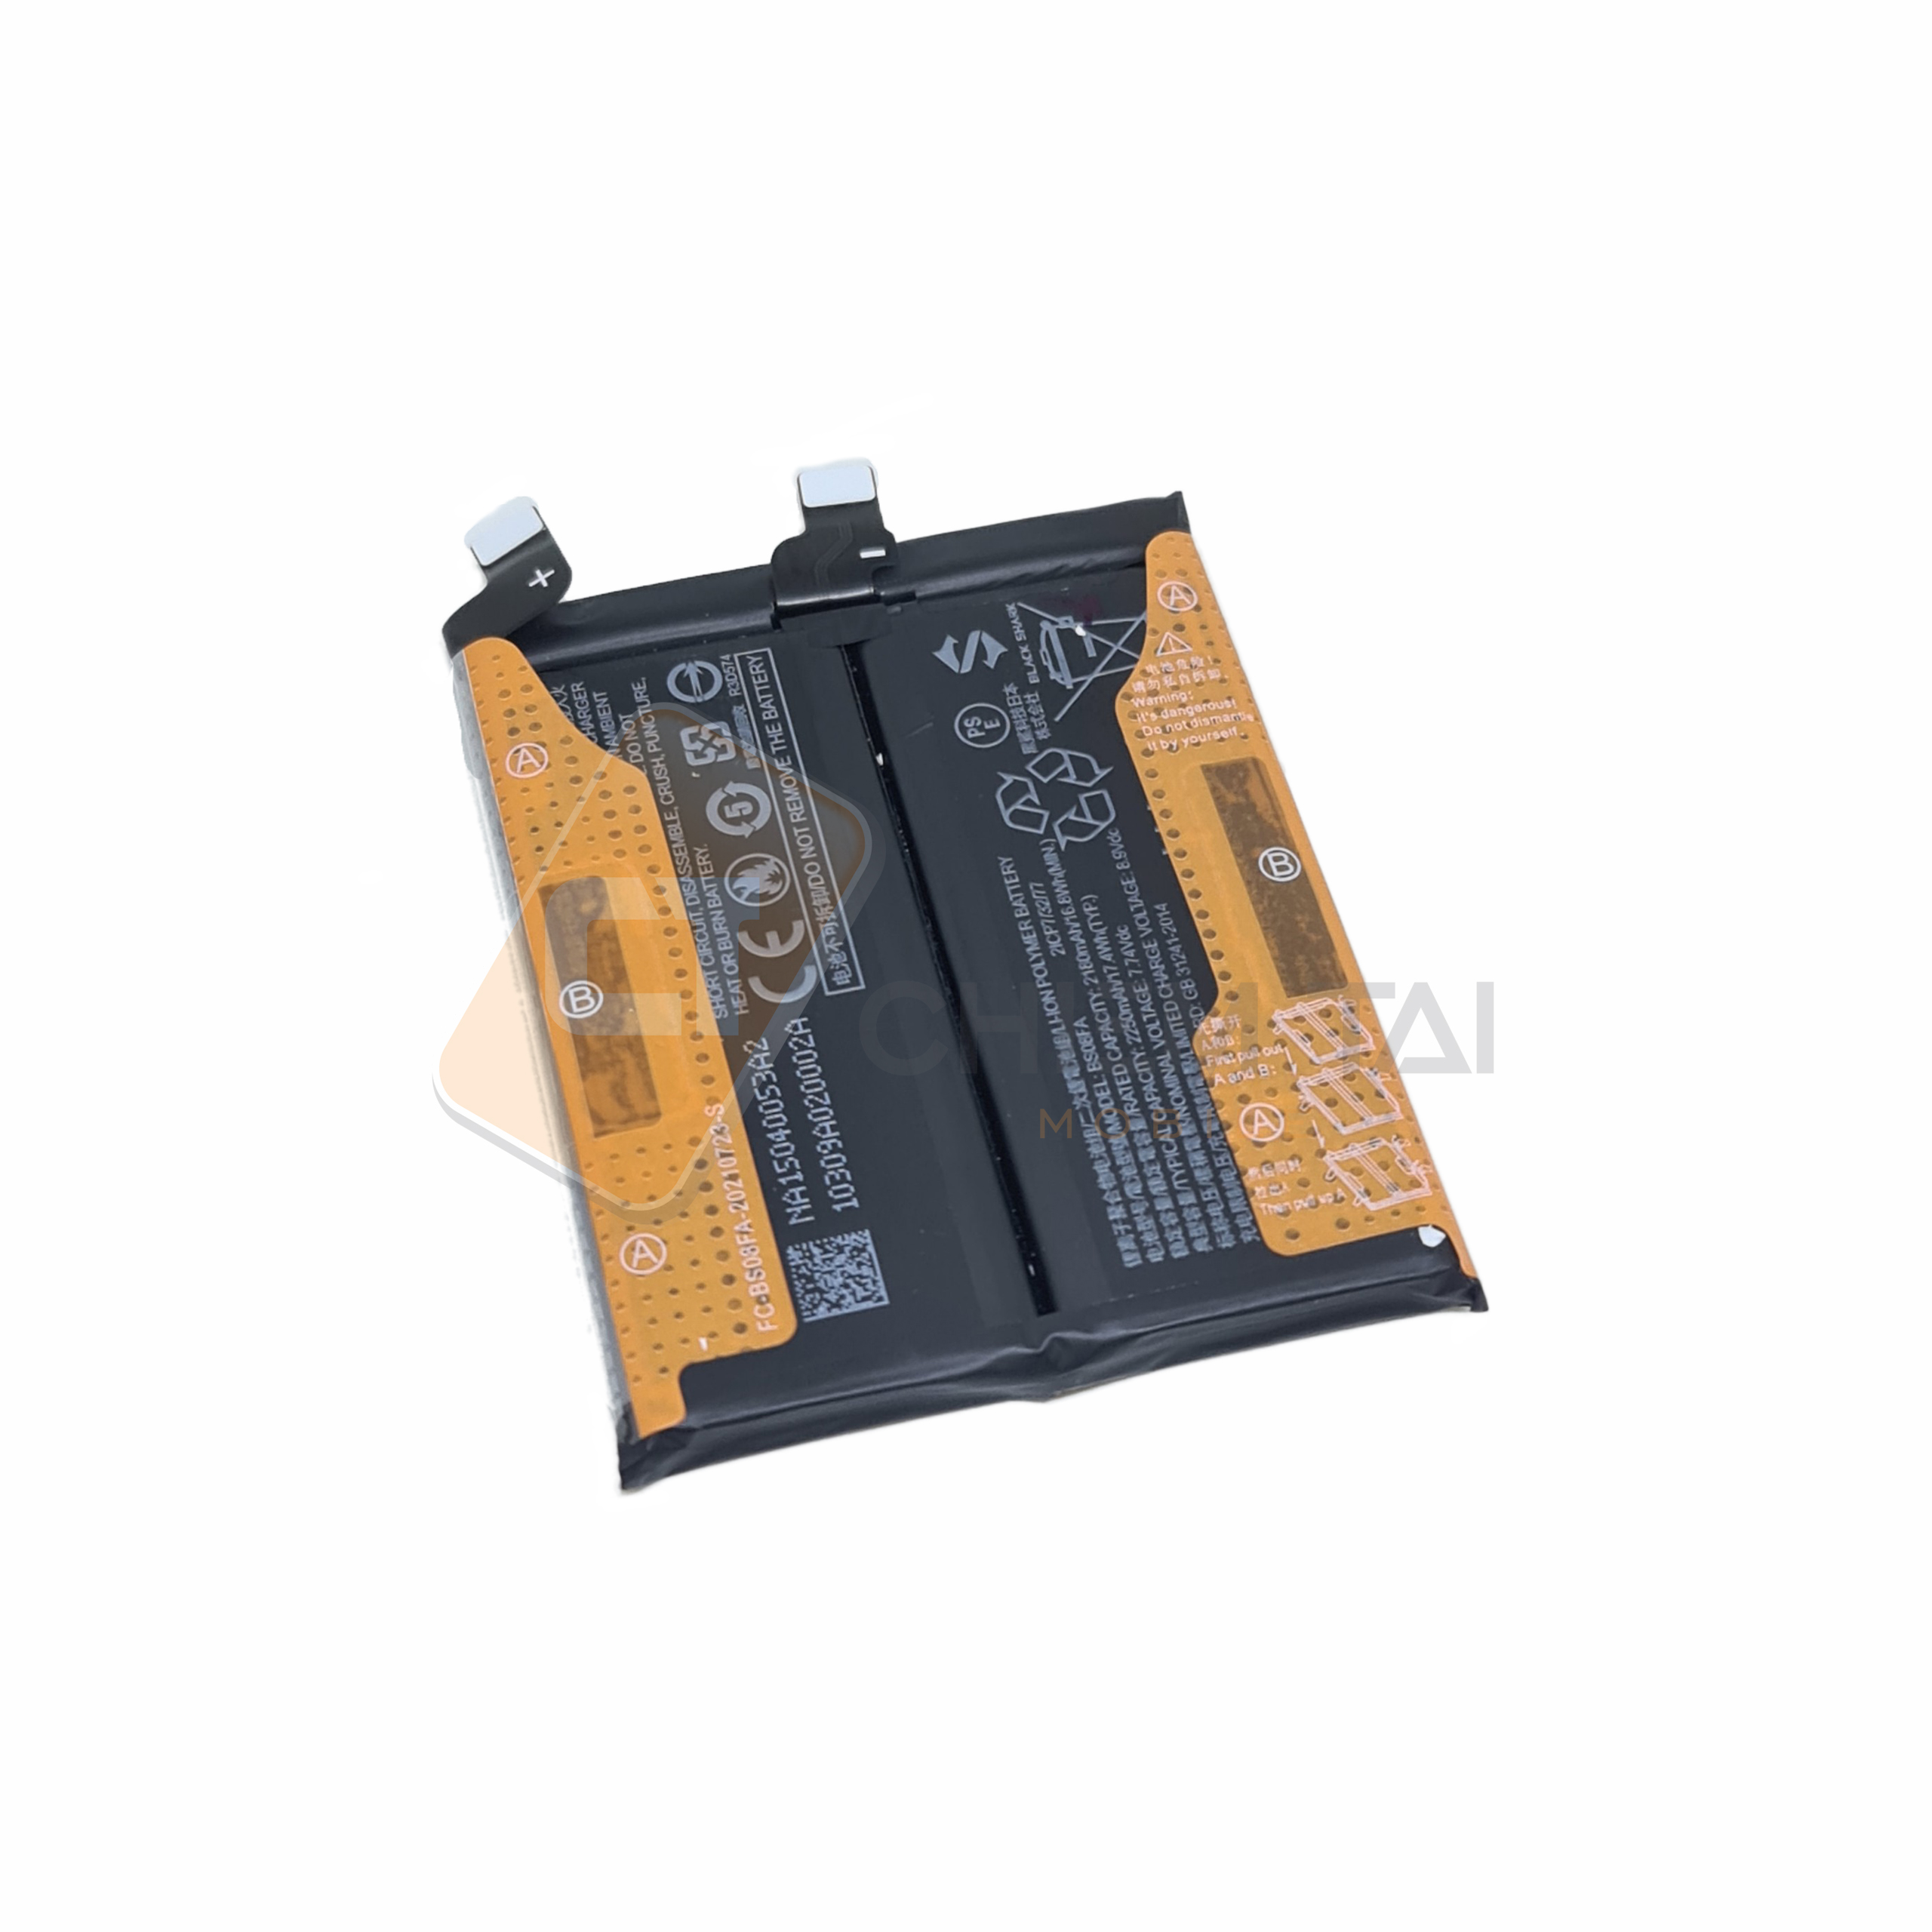 Pin Xiaomi Black Shark 4s là chiếc pin mạnh mẽ cho các thiết bị di động của bạn. Xem hình ảnh để tìm hiểu tốt hơn về năng lượng và chất lượng của nó.